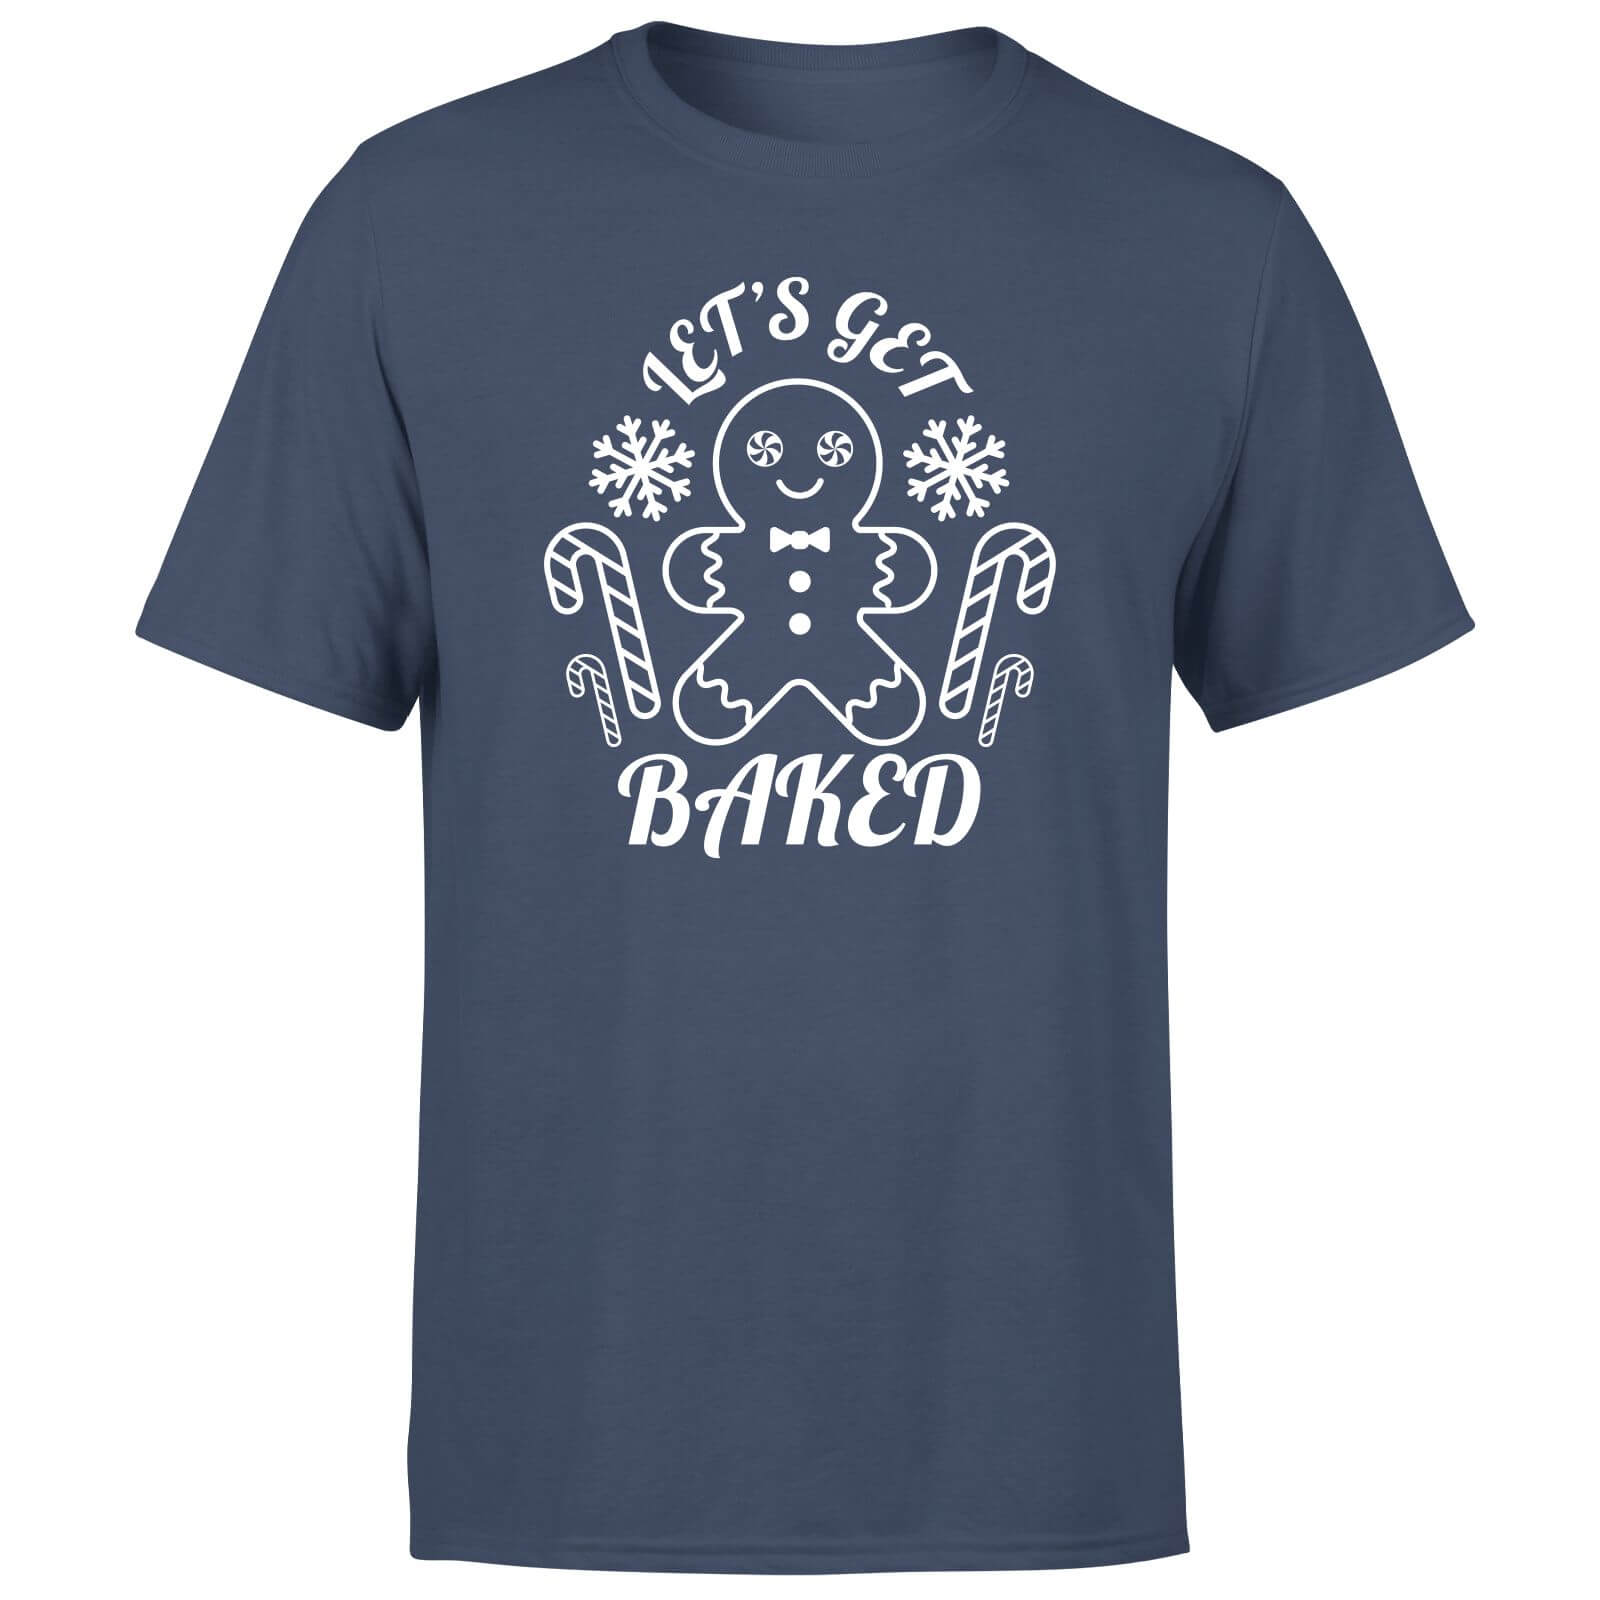 Let's Get Baked Men's T-Shirt - Navy - XS - Navy